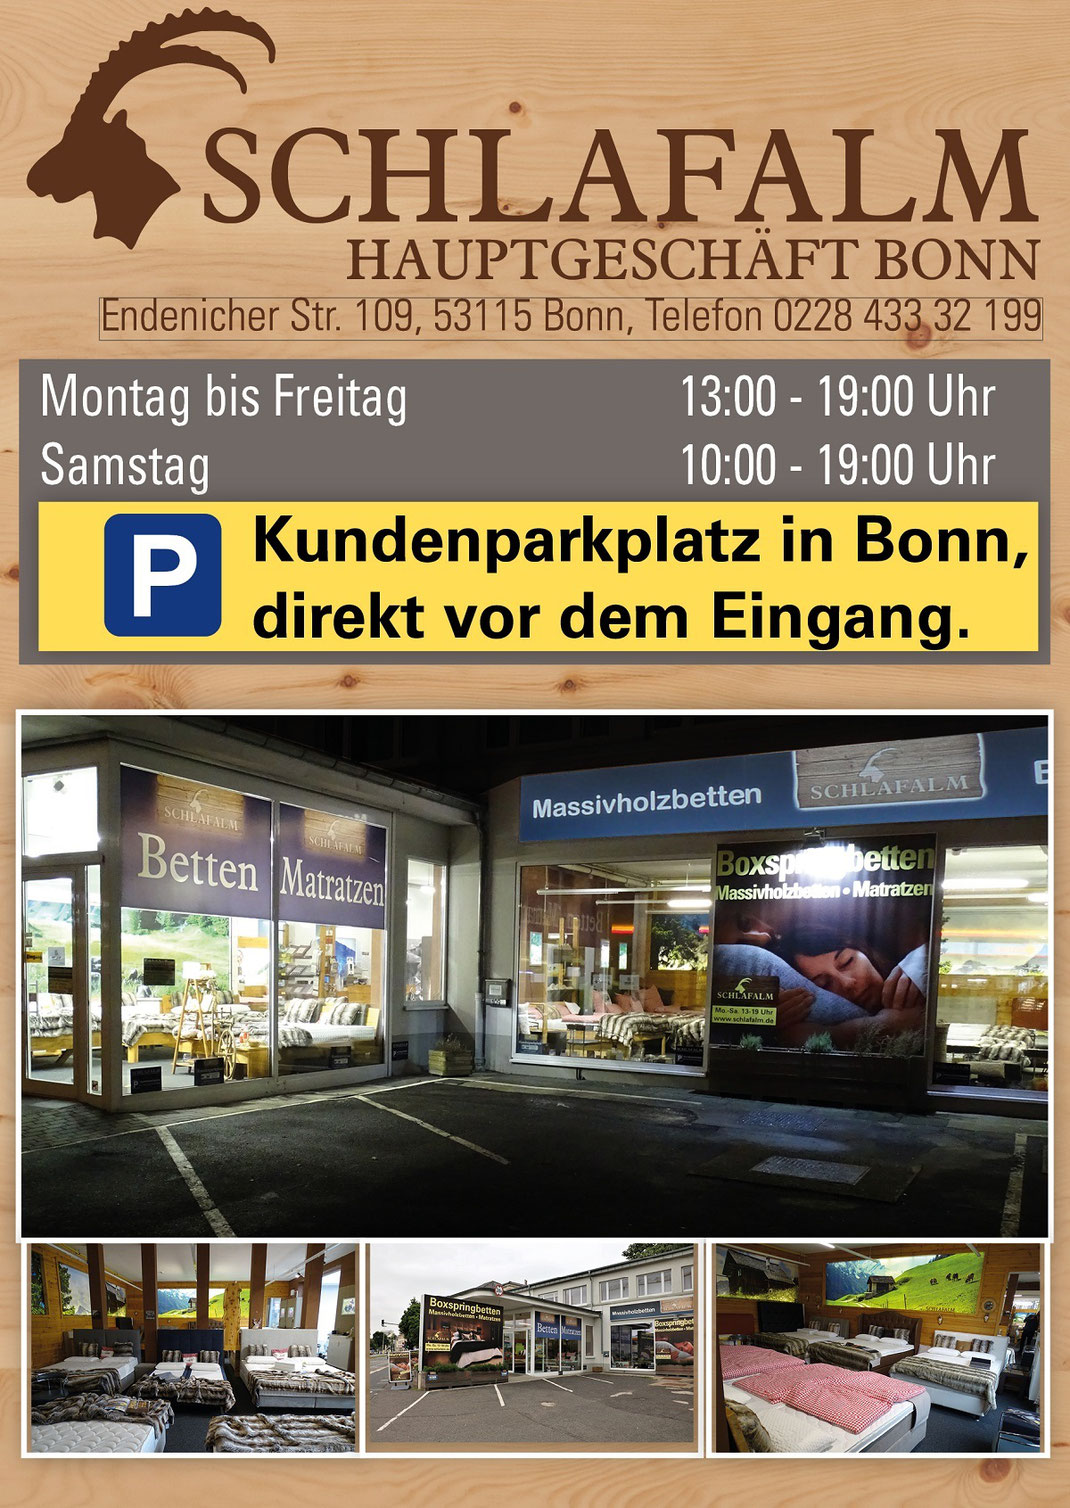 Ein Bild für Kunden aus Köln, das Text, Matratzen, Taschenfederkernmatratzen, Kaltschaummatratzen, extra feste Matratzen enthält.